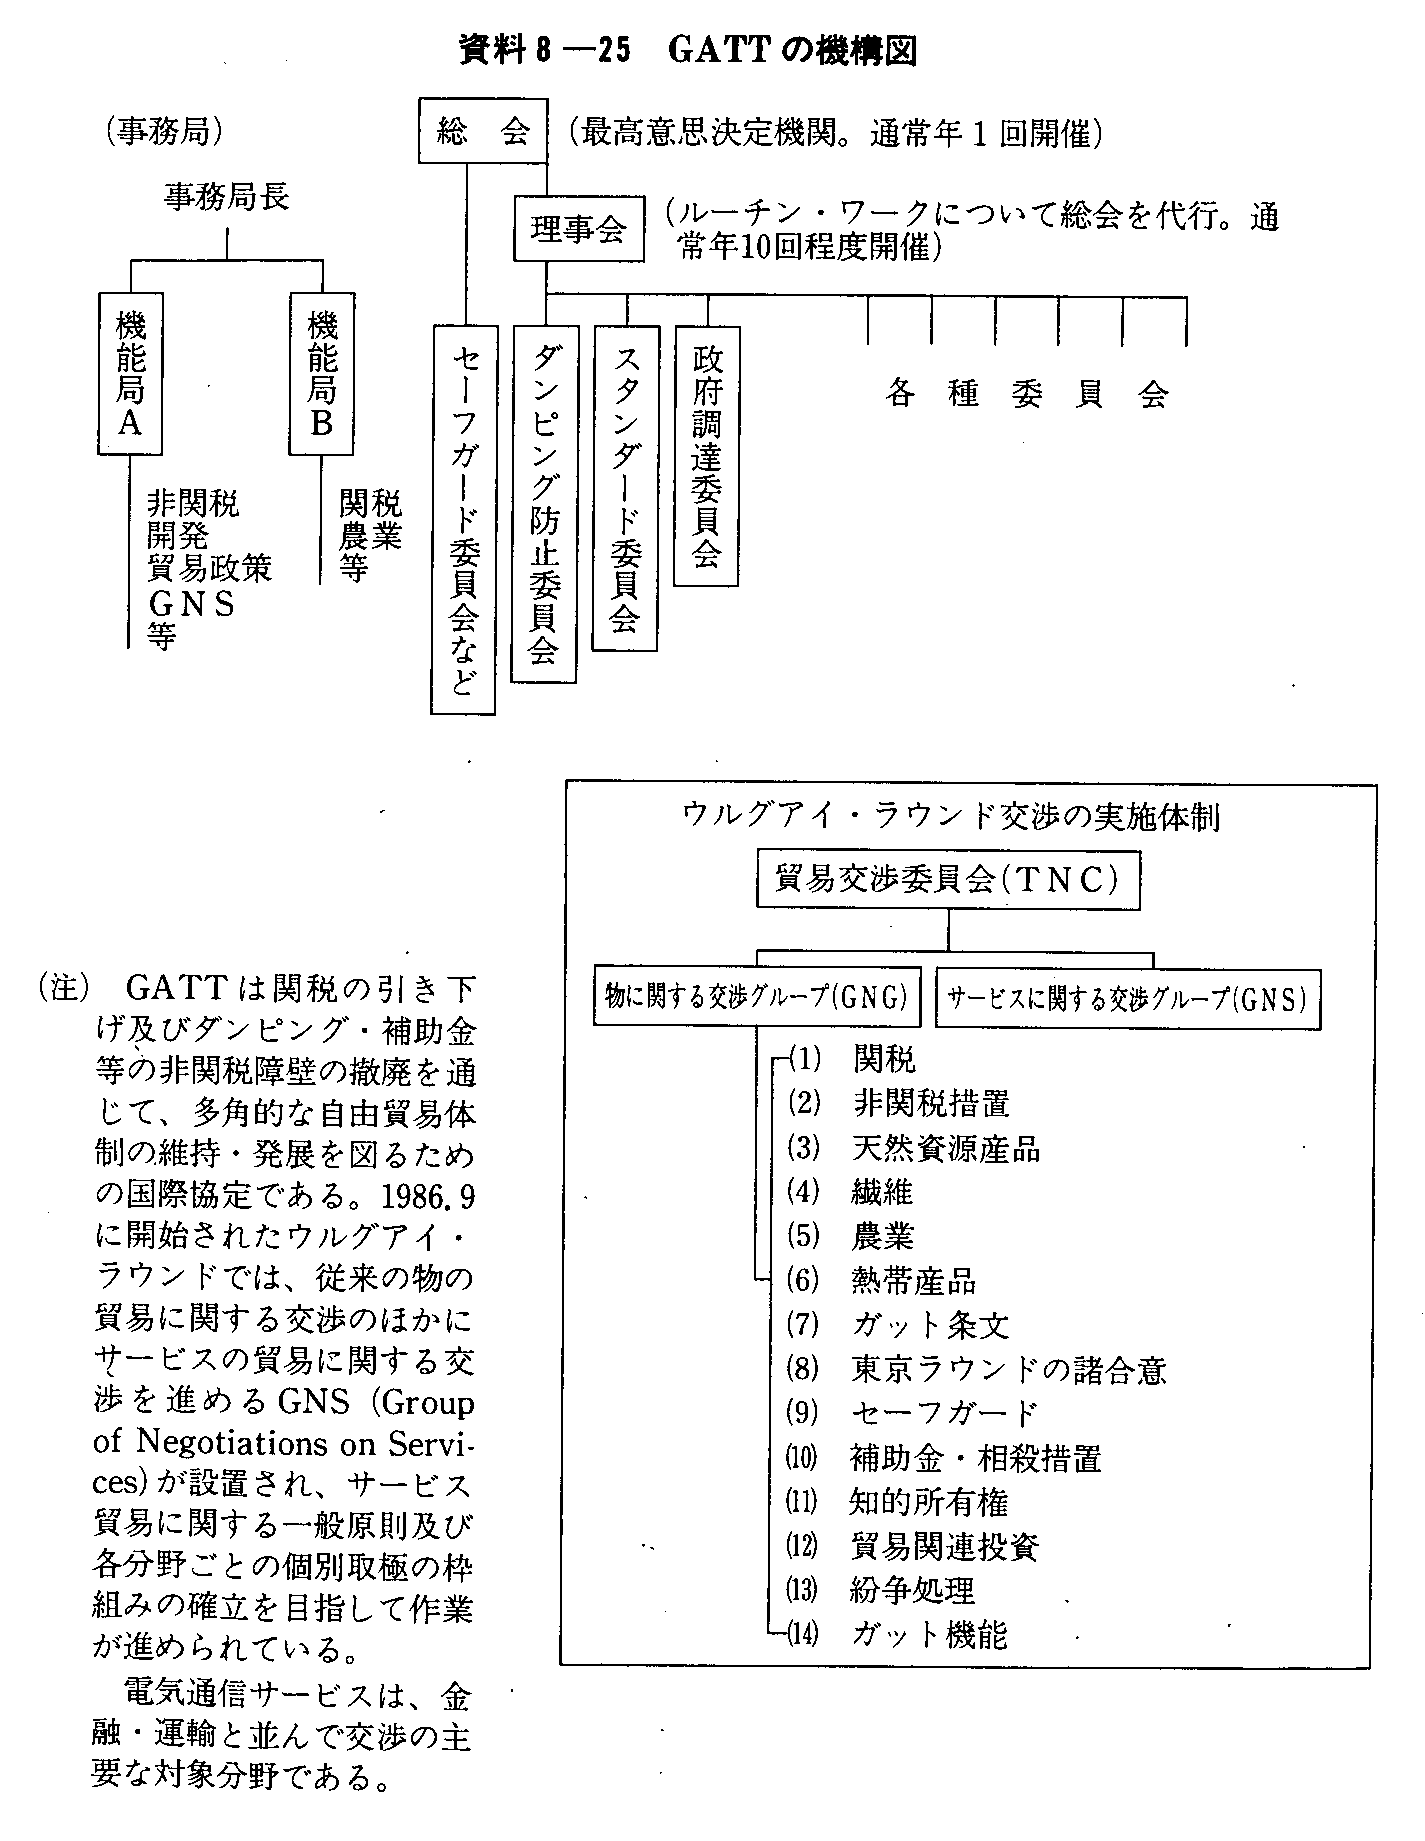 資料8-25 GATTの機構図